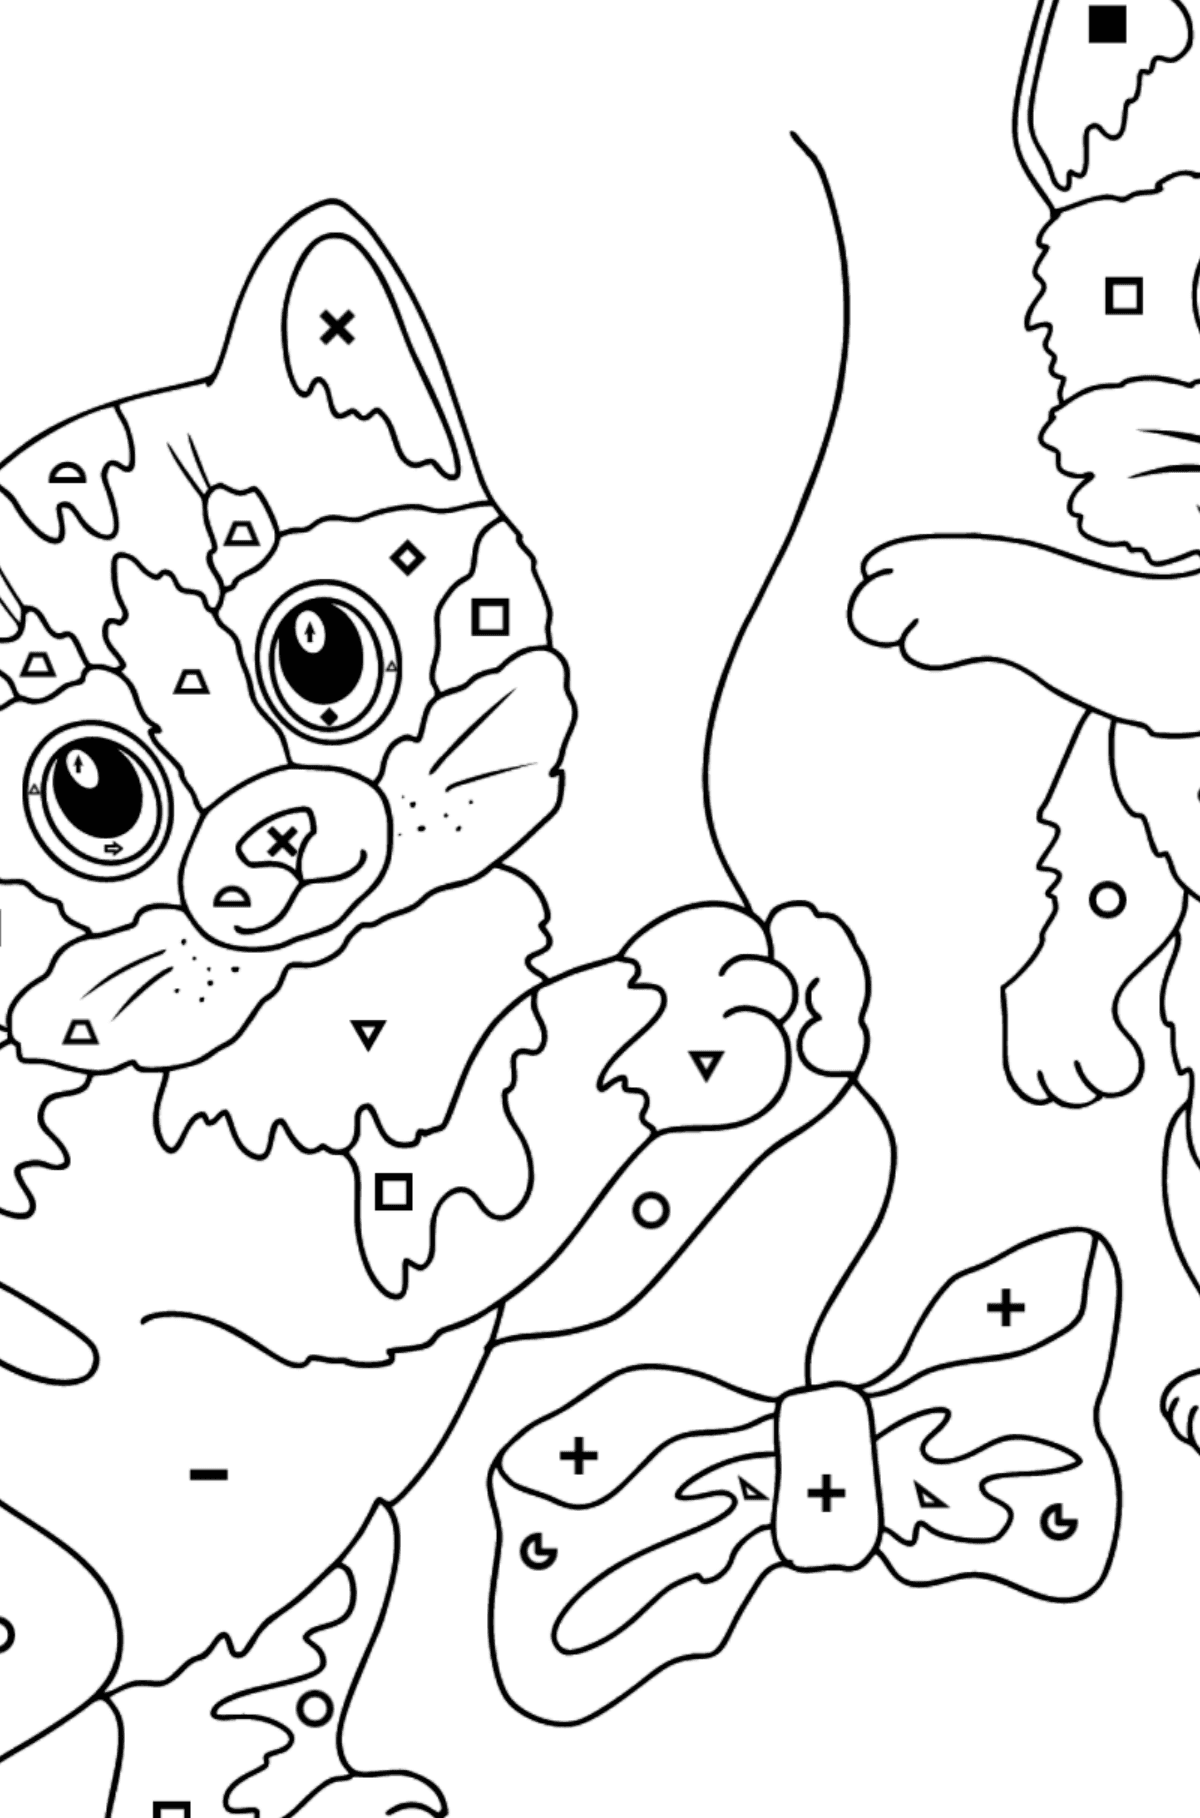 Забарвлення пухнасті кошенята - Розмальовка по Символам і Геометричним Фігурам для дітей